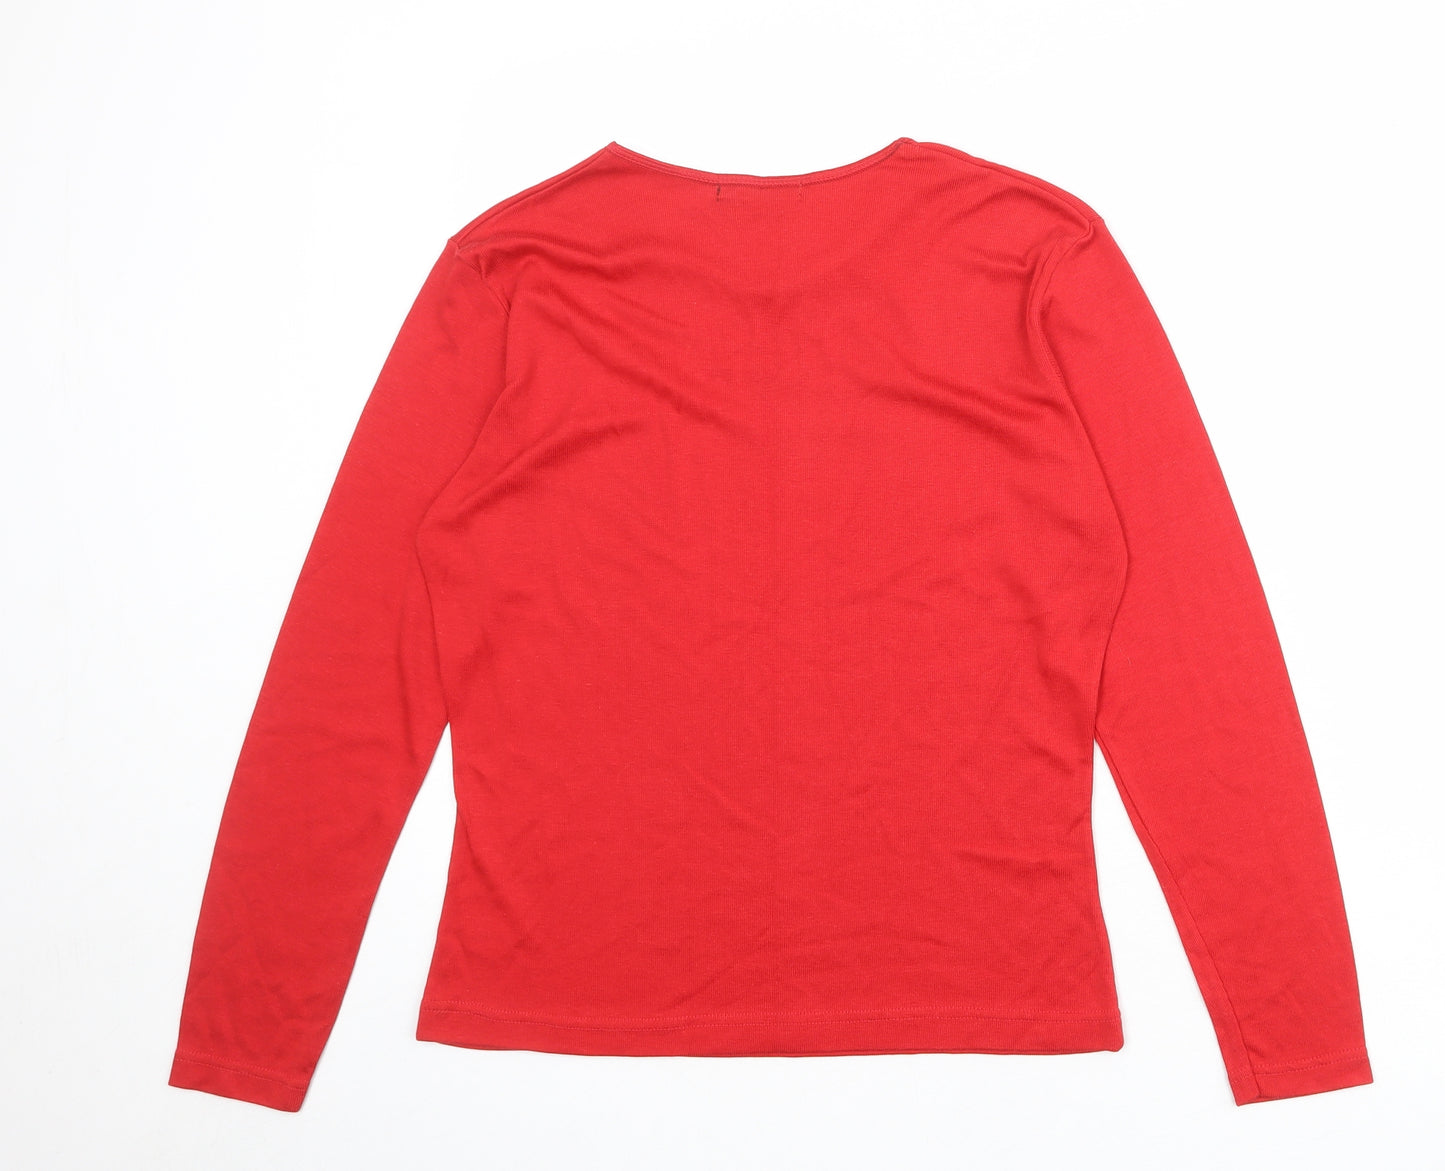 Joie de Vivre Womens Red Viscose Basic T-Shirt Size M Round Neck - Size M-L